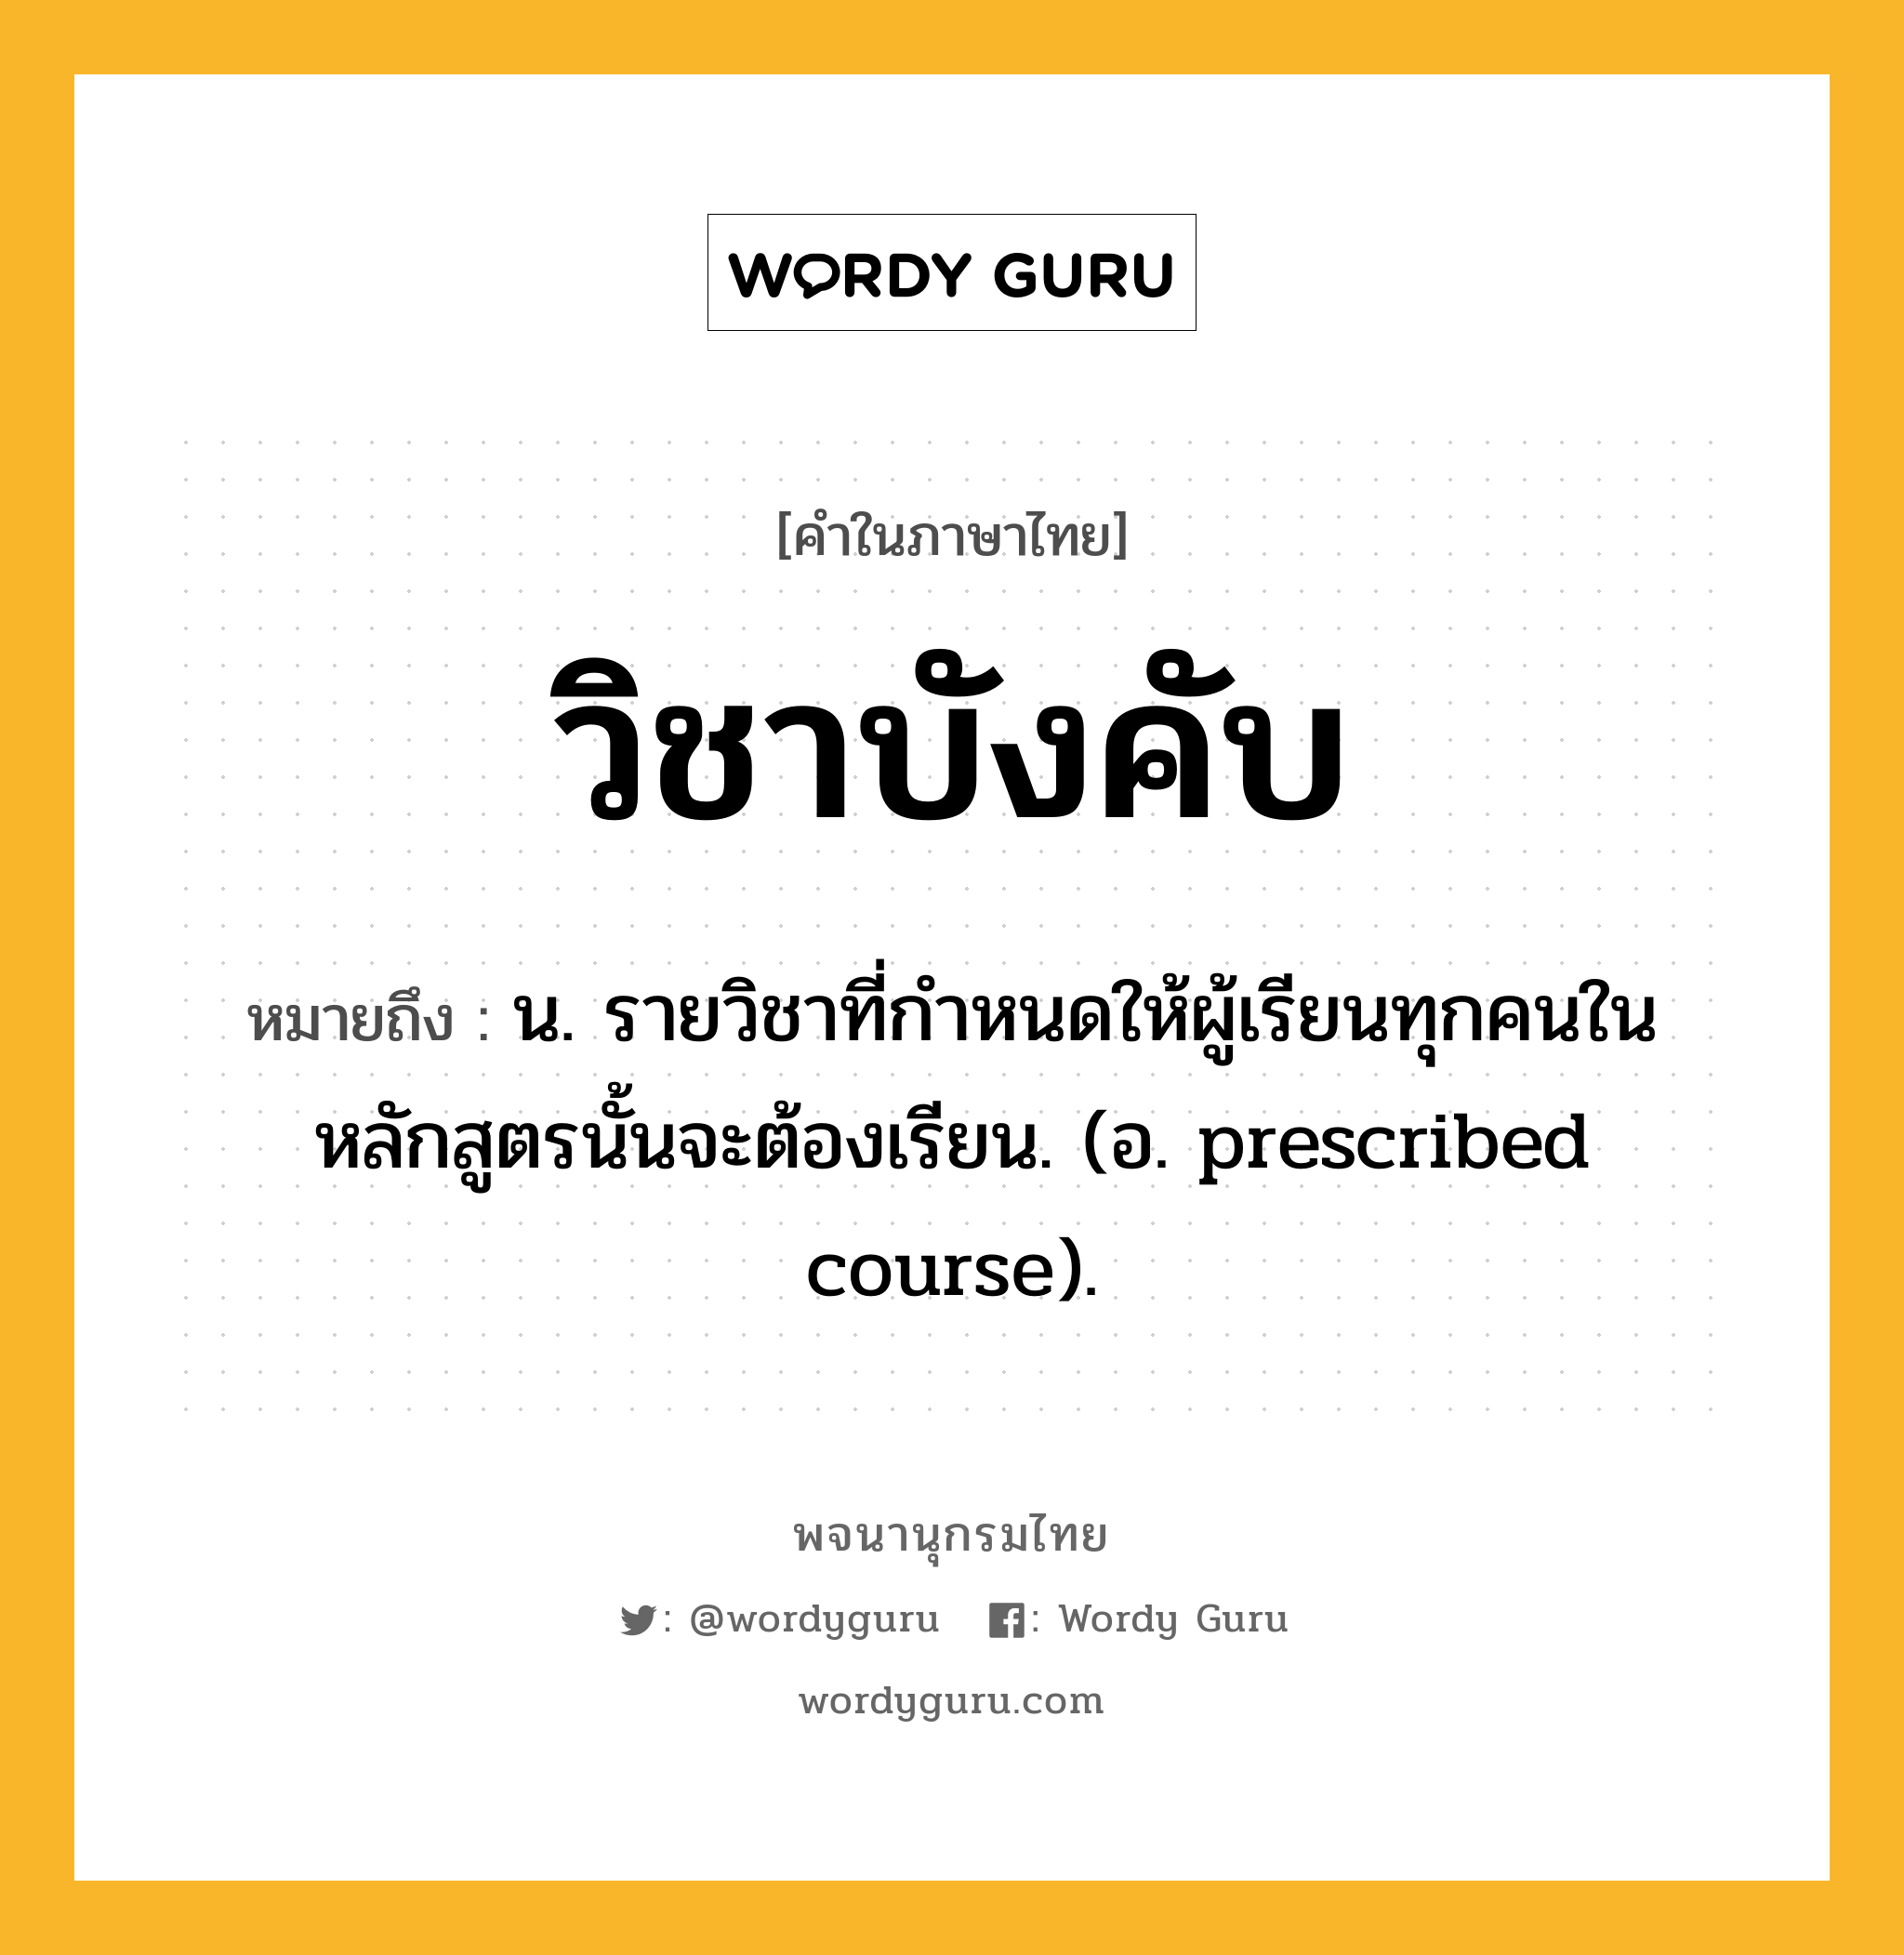 วิชาบังคับ ความหมาย หมายถึงอะไร?, คำในภาษาไทย วิชาบังคับ หมายถึง น. รายวิชาที่กำหนดให้ผู้เรียนทุกคนในหลักสูตรนั้นจะต้องเรียน. (อ. prescribed course).